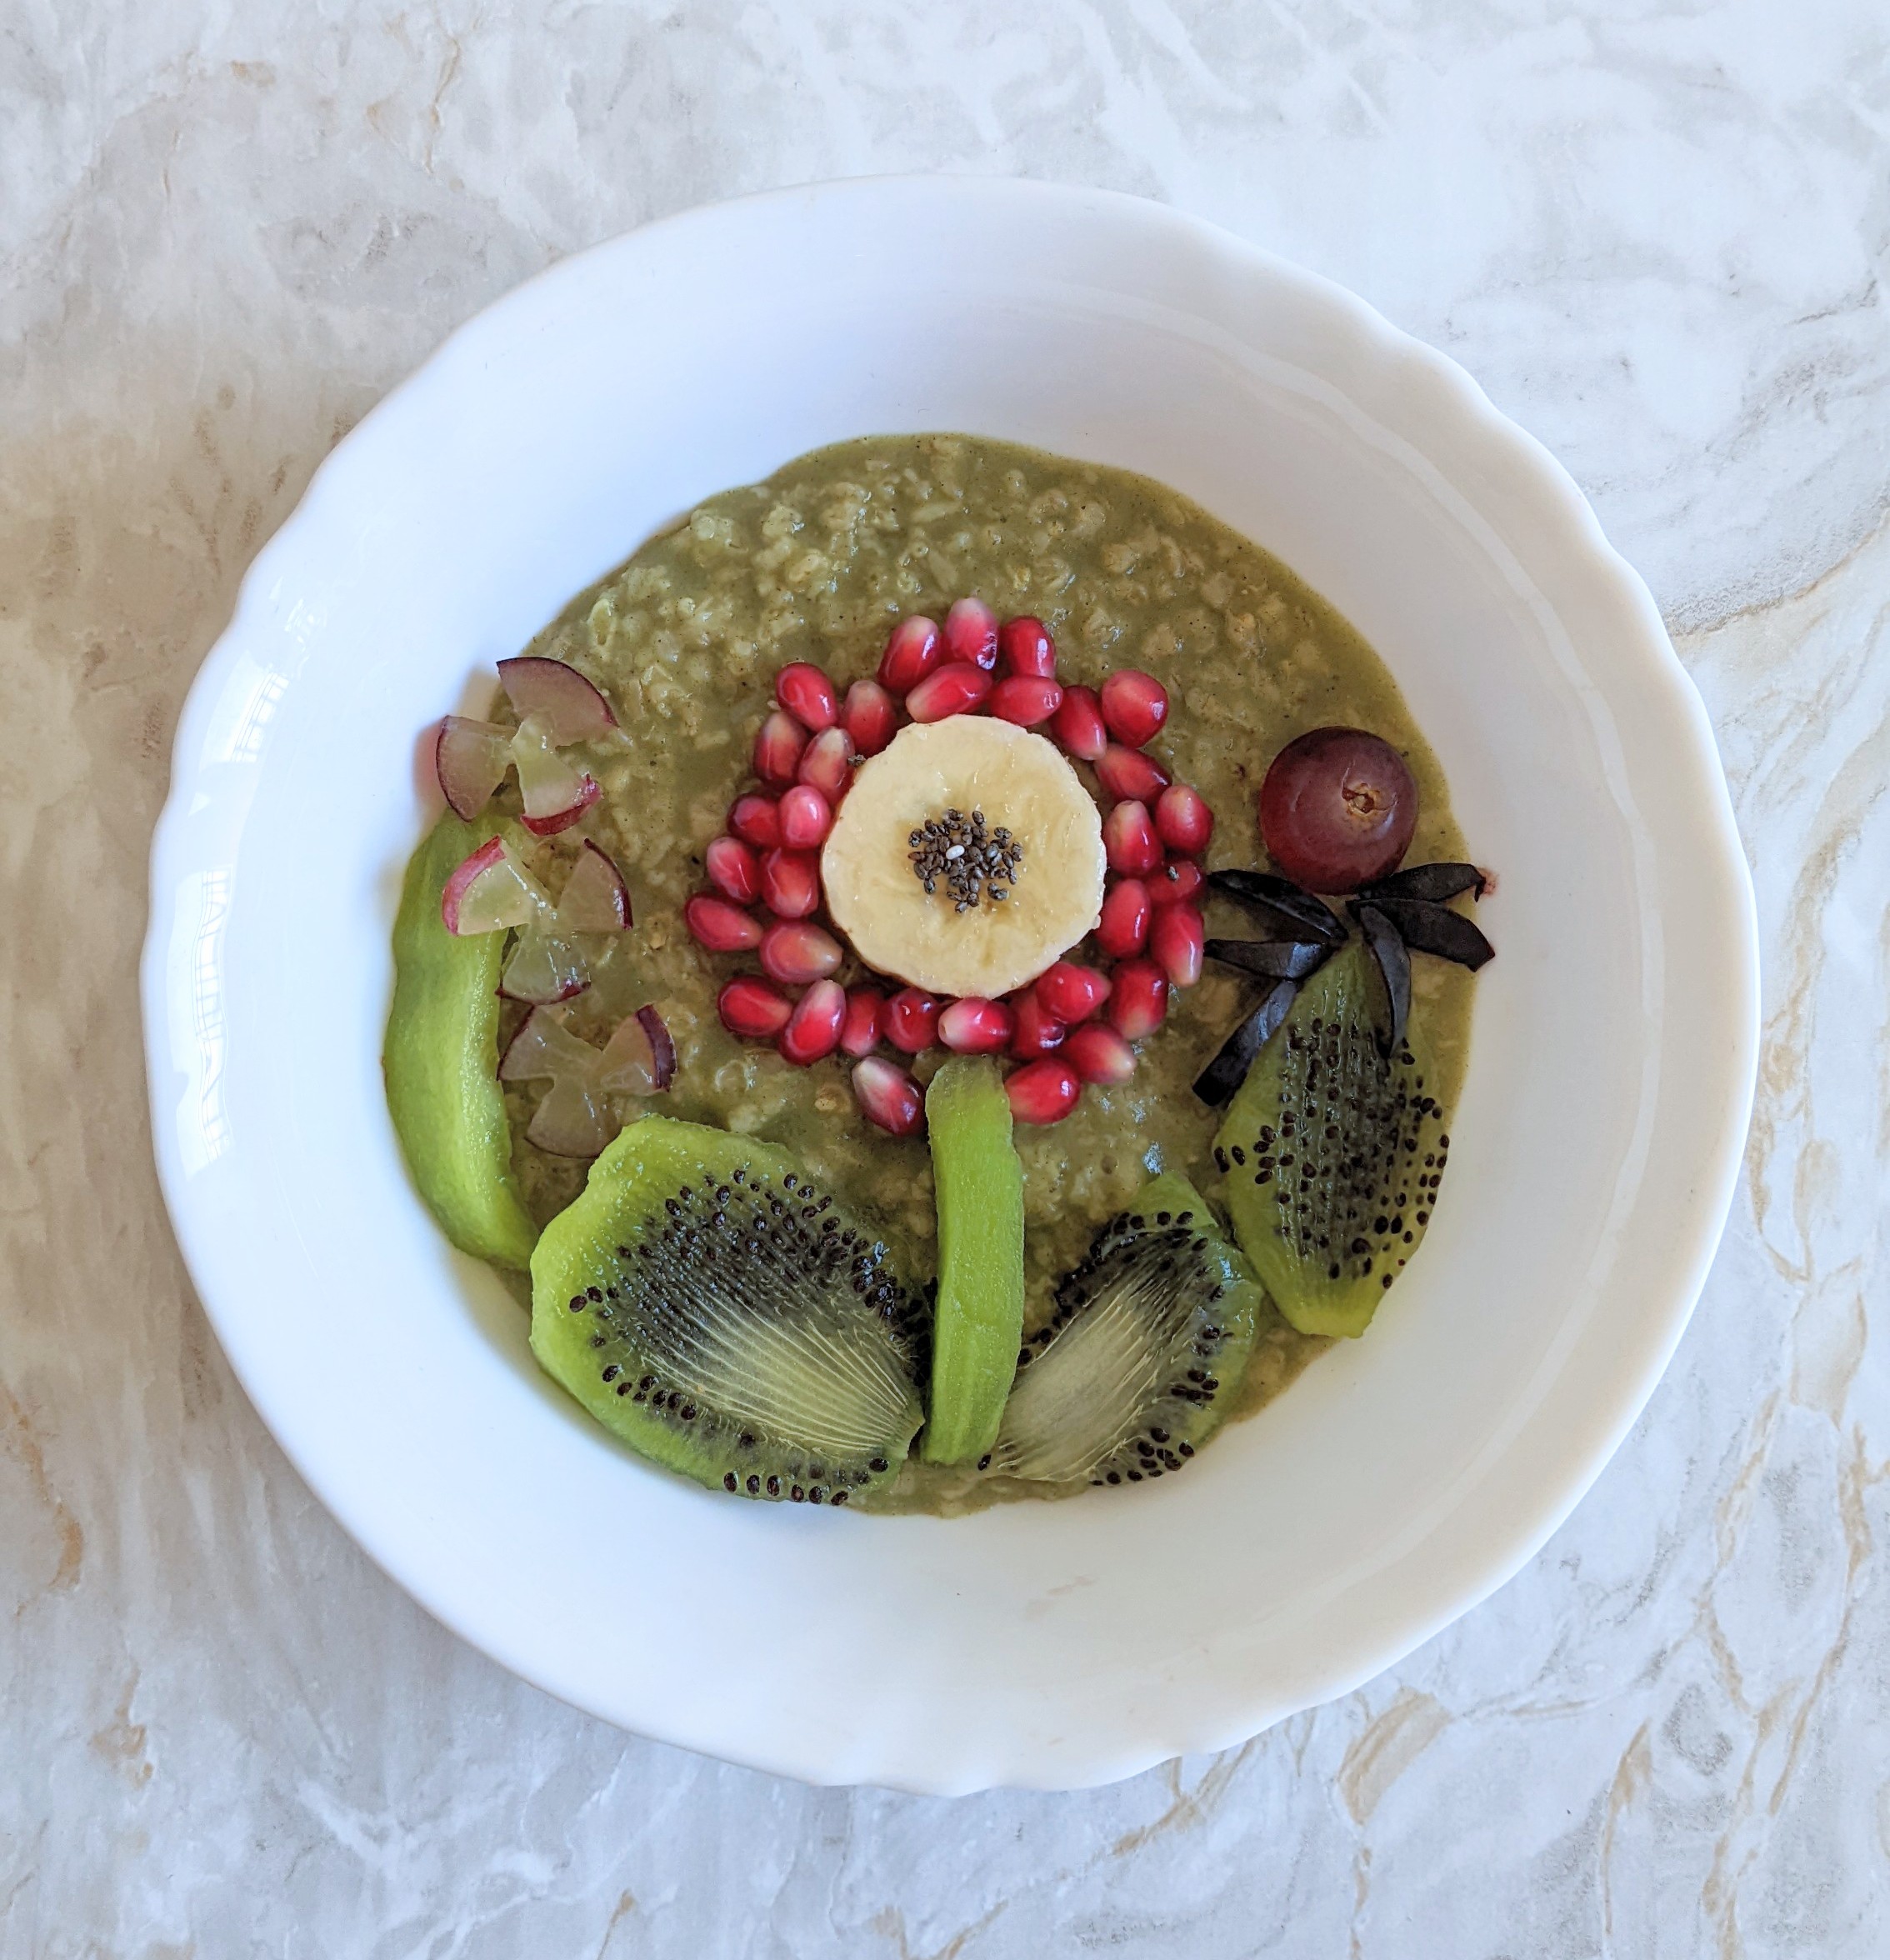 moringa-vanilla-breakfast-oats-with-banana-kiwi-fruit-chia-seeds-pomegranate-arils-and-grapes-breakfast-ideas-breakfast-bowls-vegan-breakfast-recipes-moringa-recipes-buy-moringa-cheap-online-uk